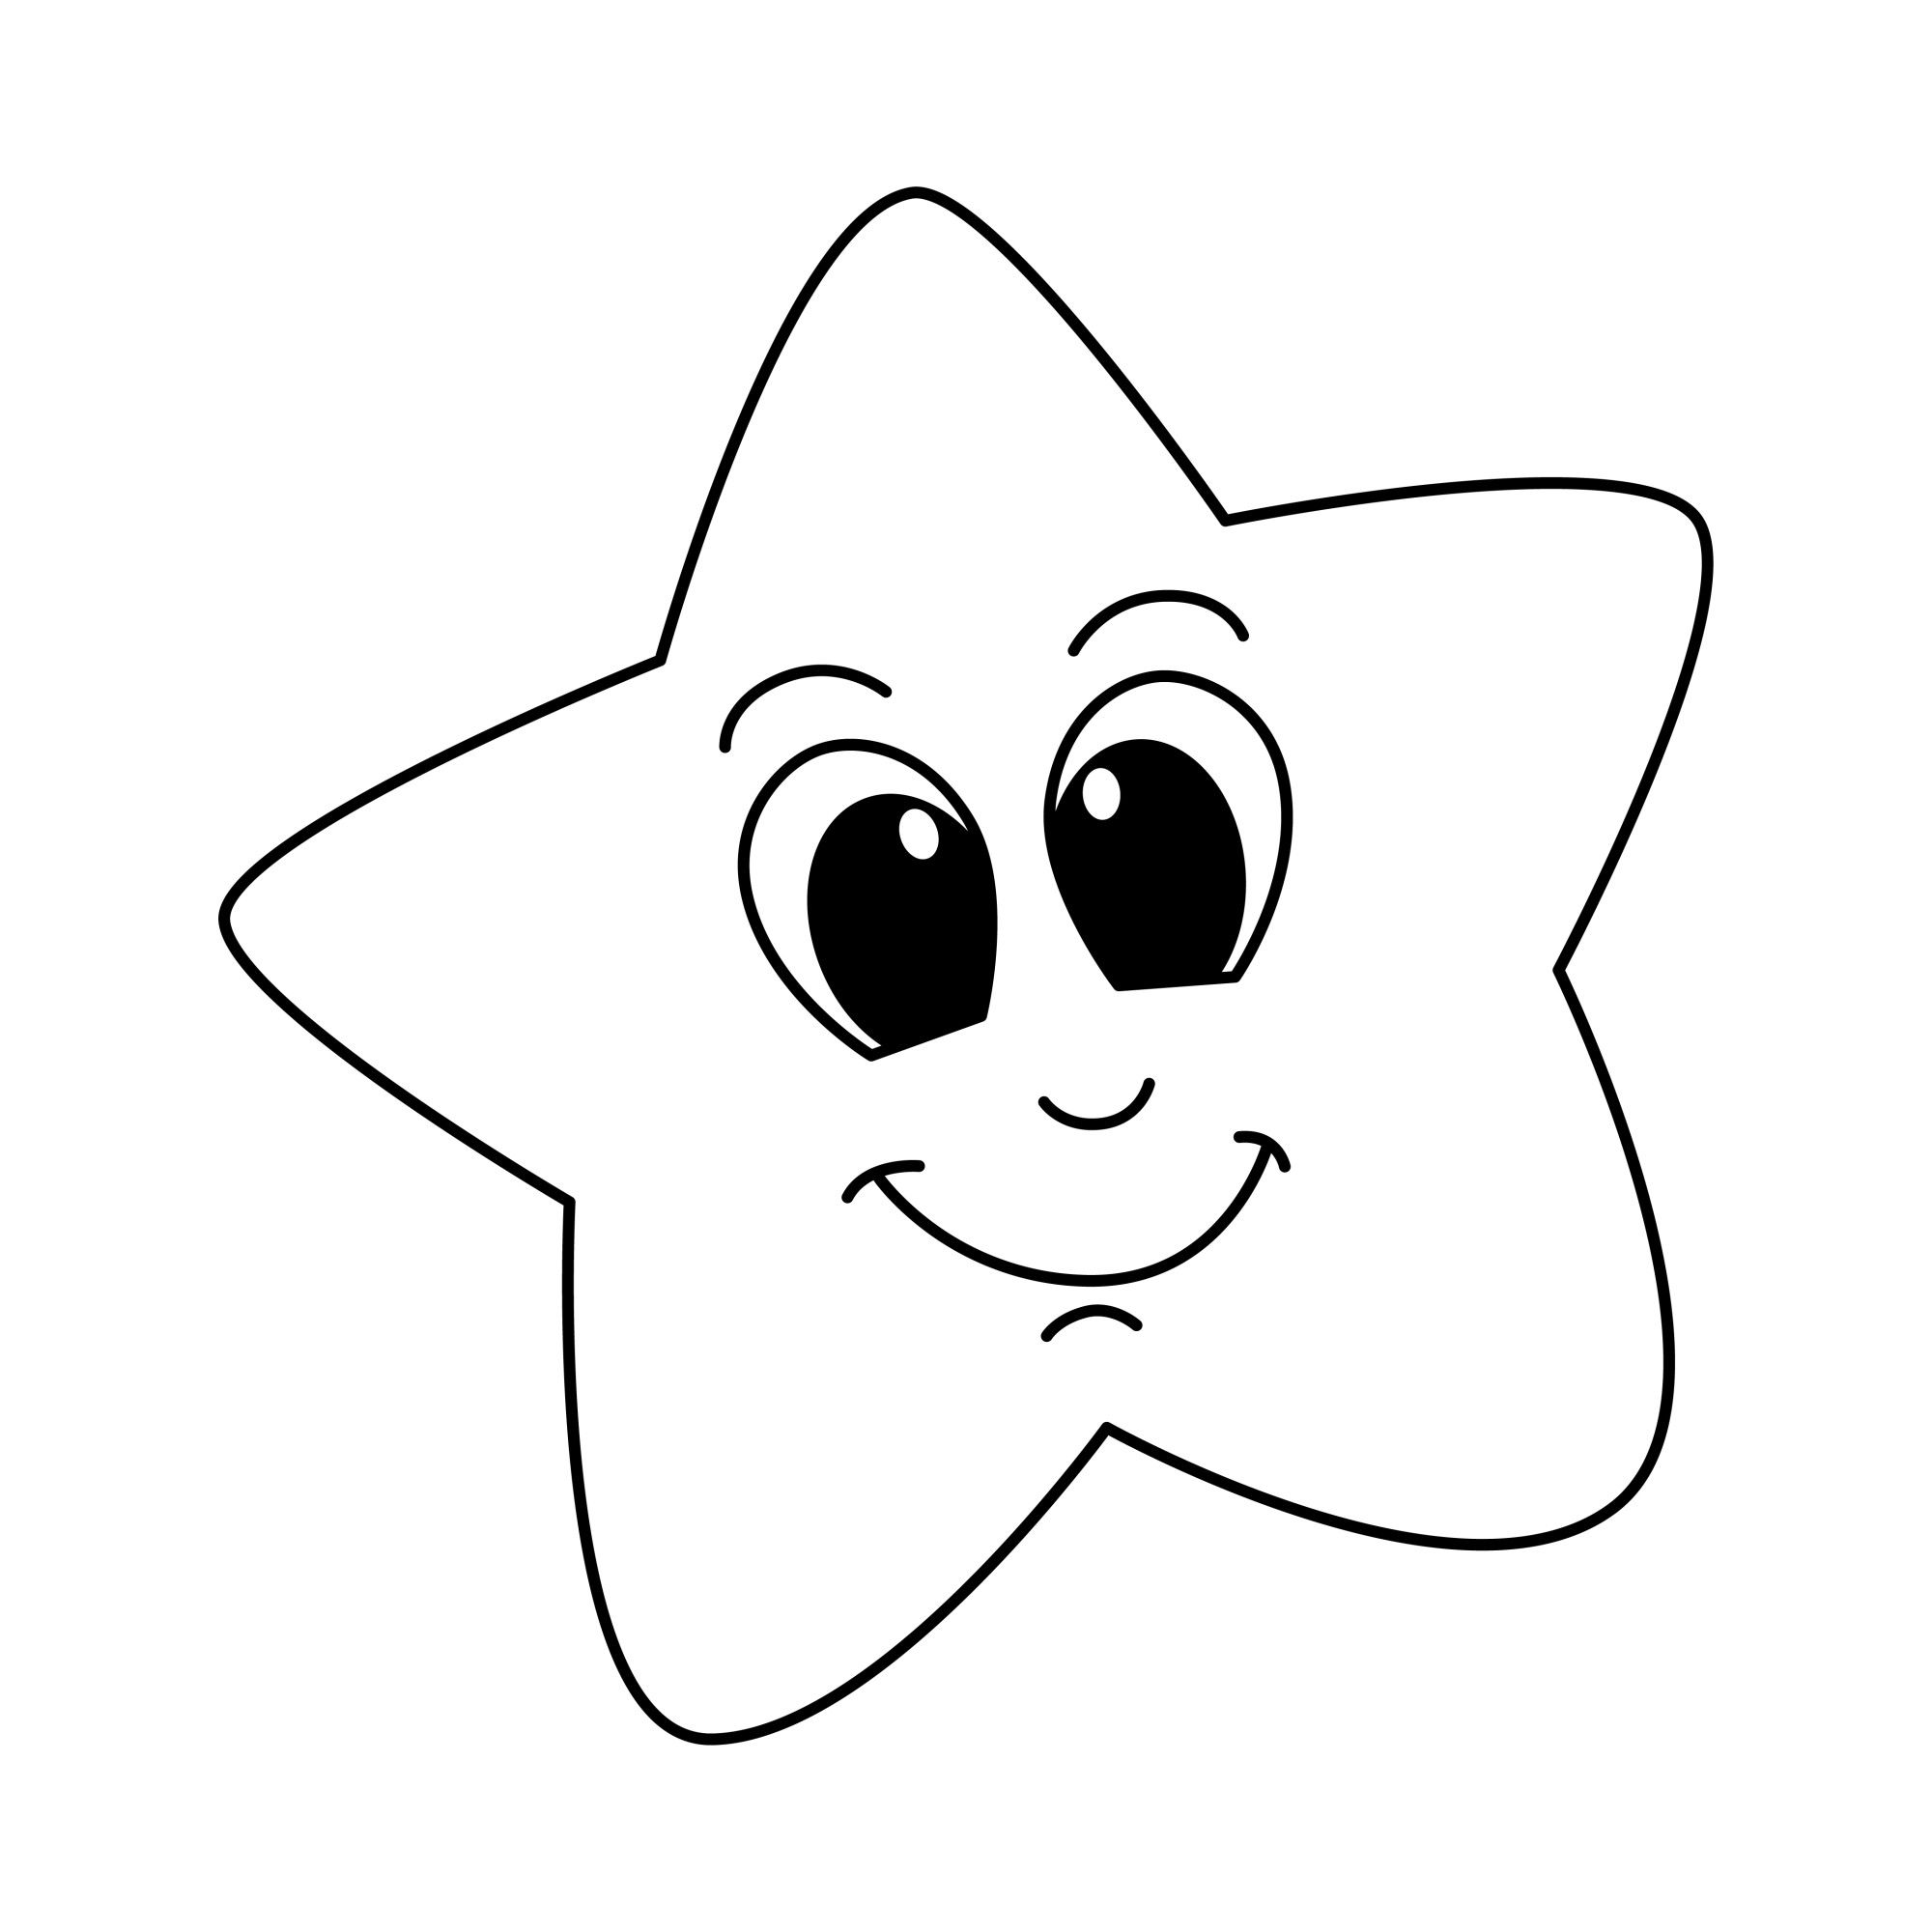 Раскраска для детей: радостный смайлик звездочка